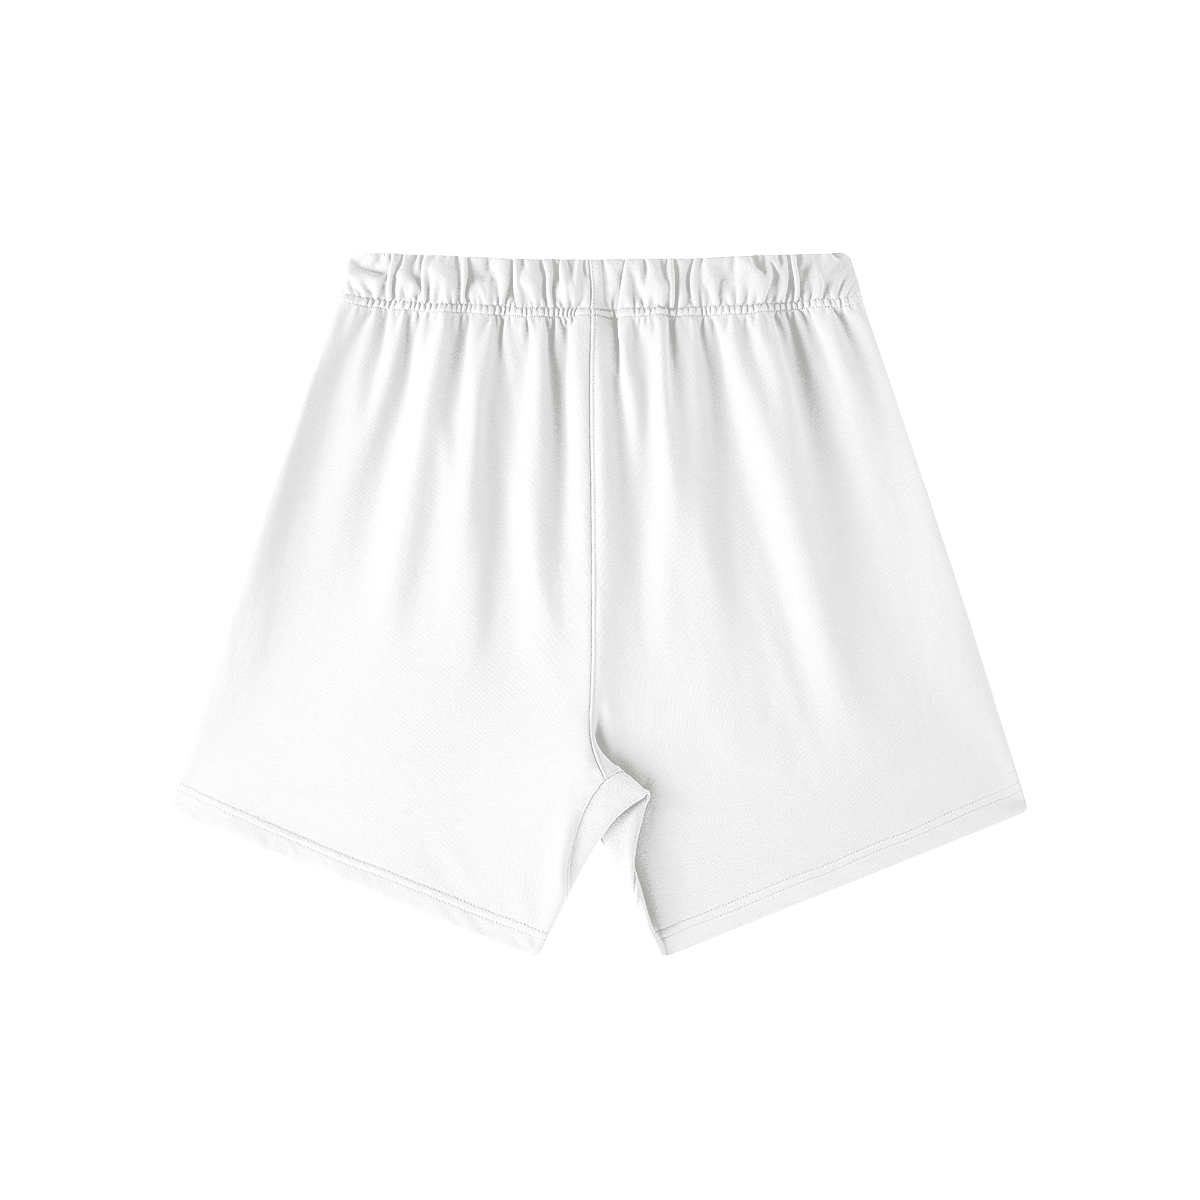 Unisex Oversized Sweat Shorts (Light)